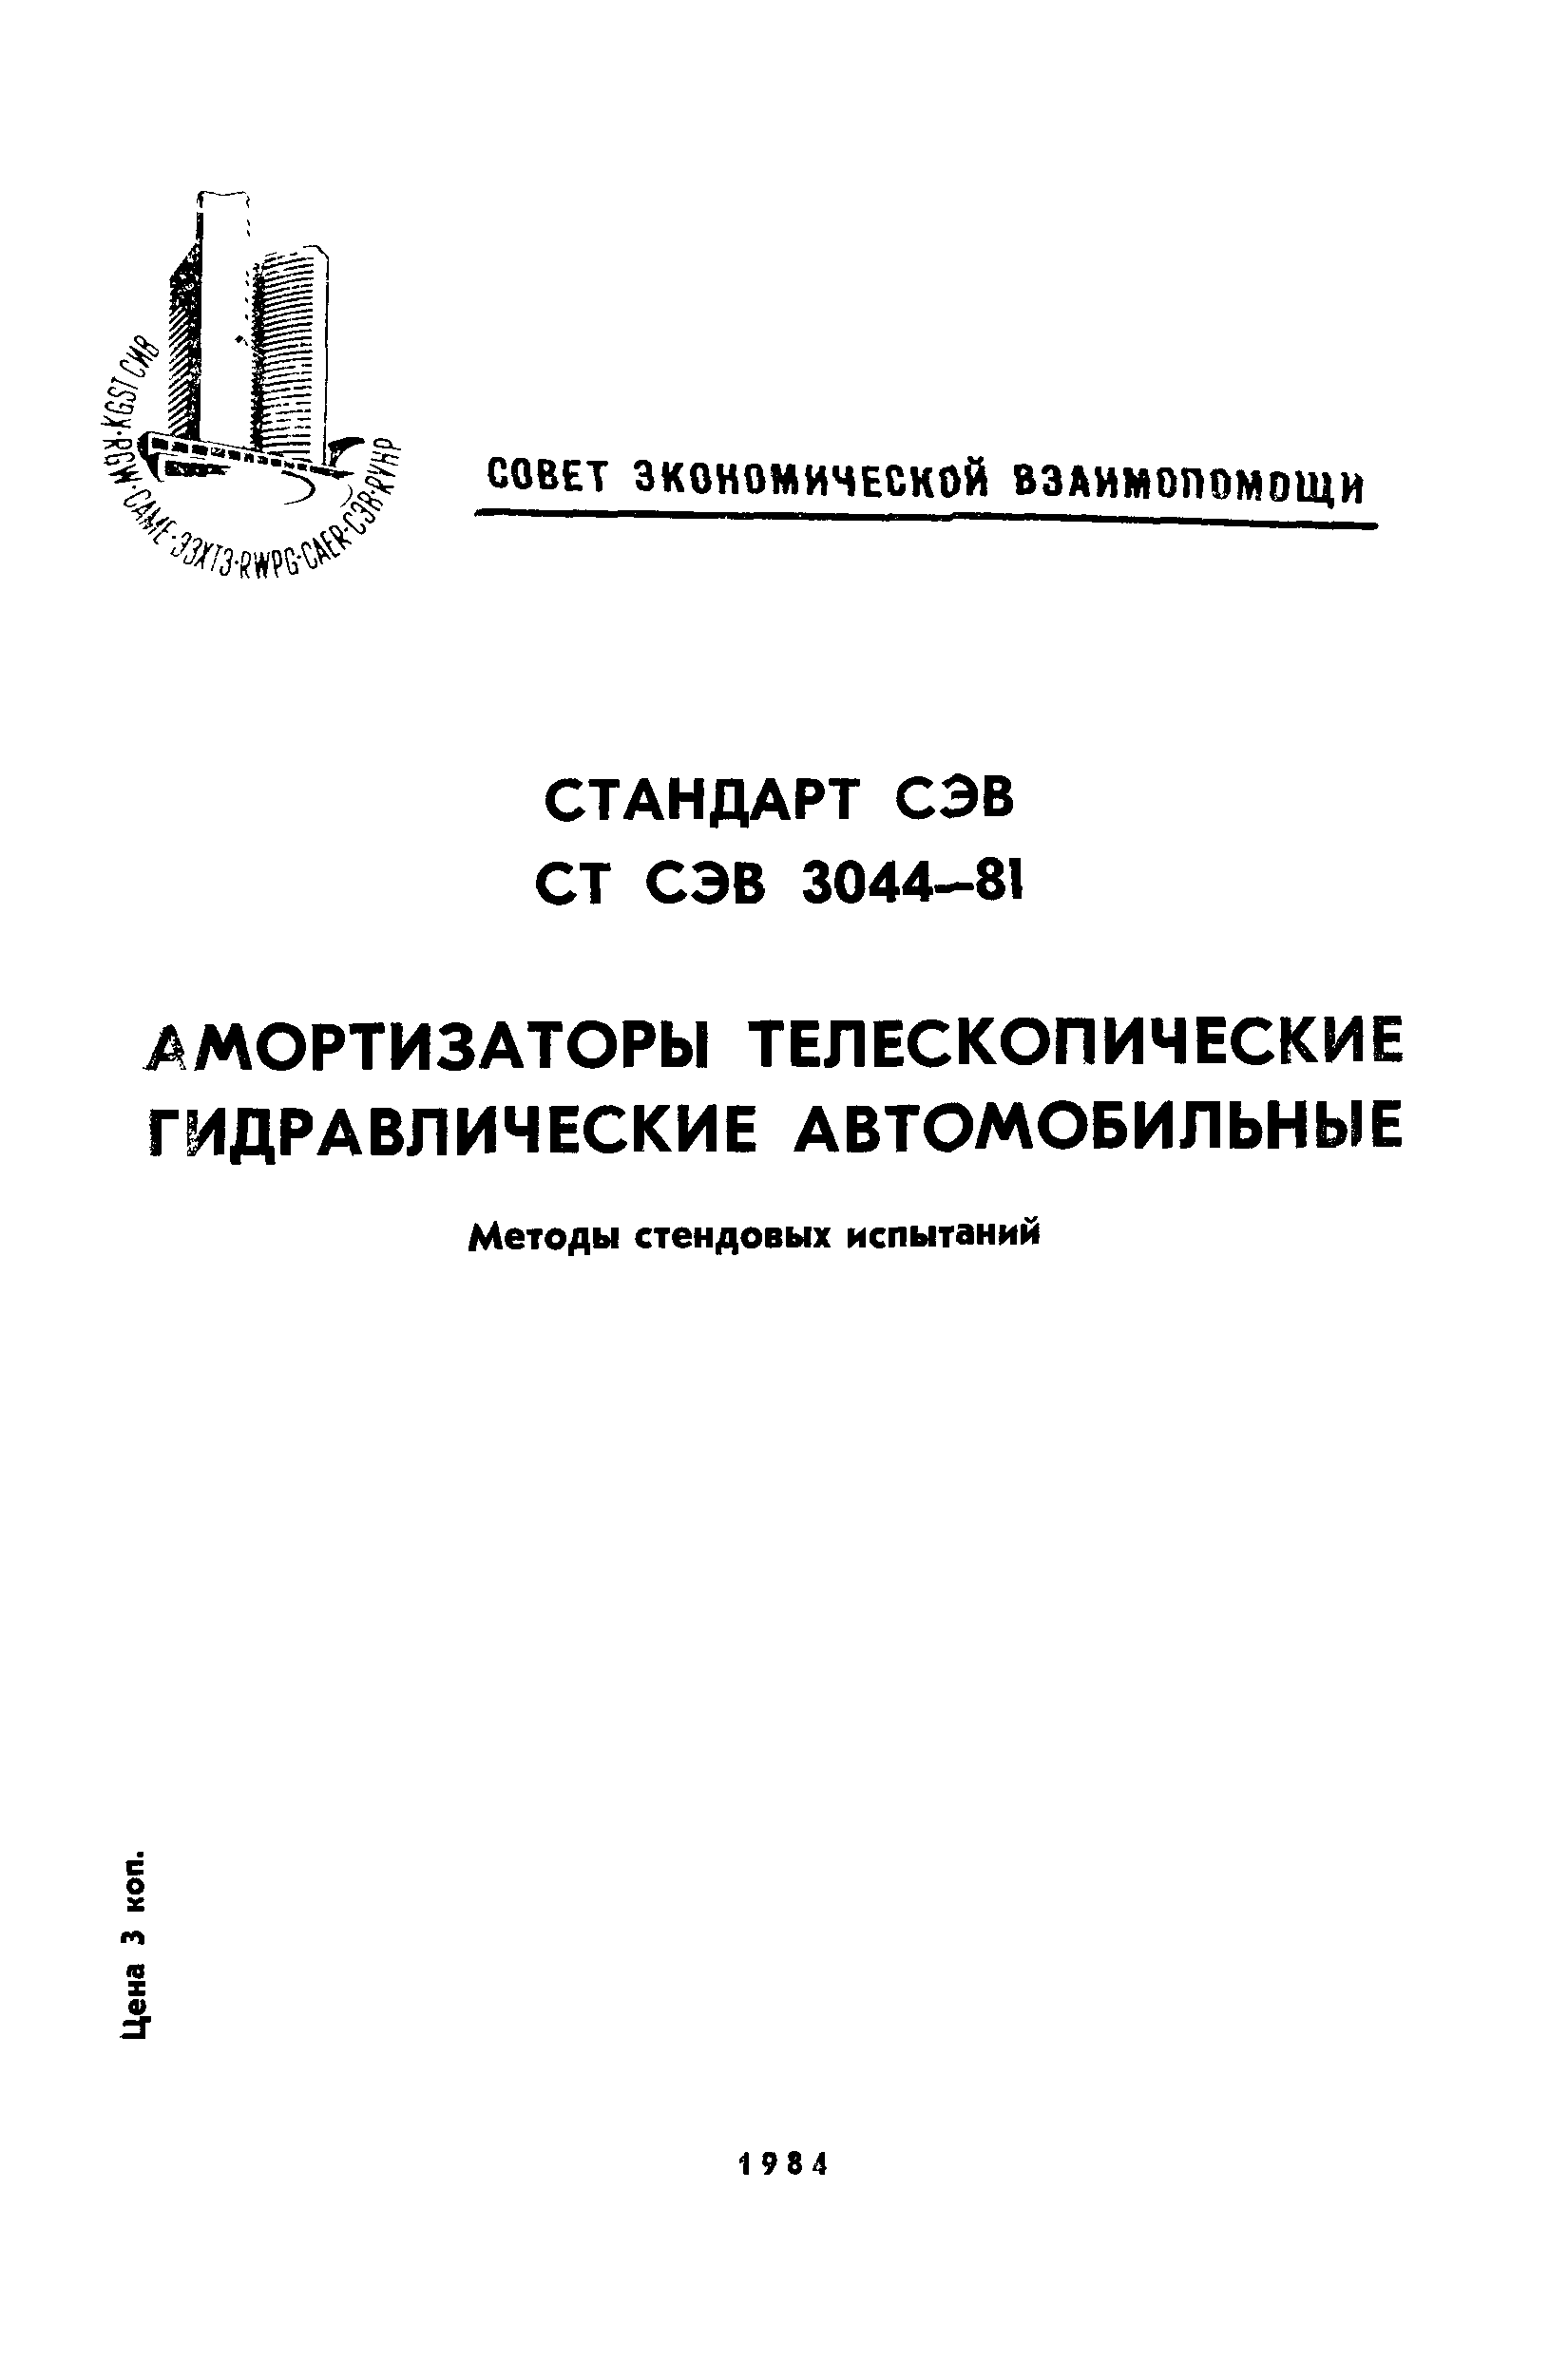 СТ СЭВ 3044-81